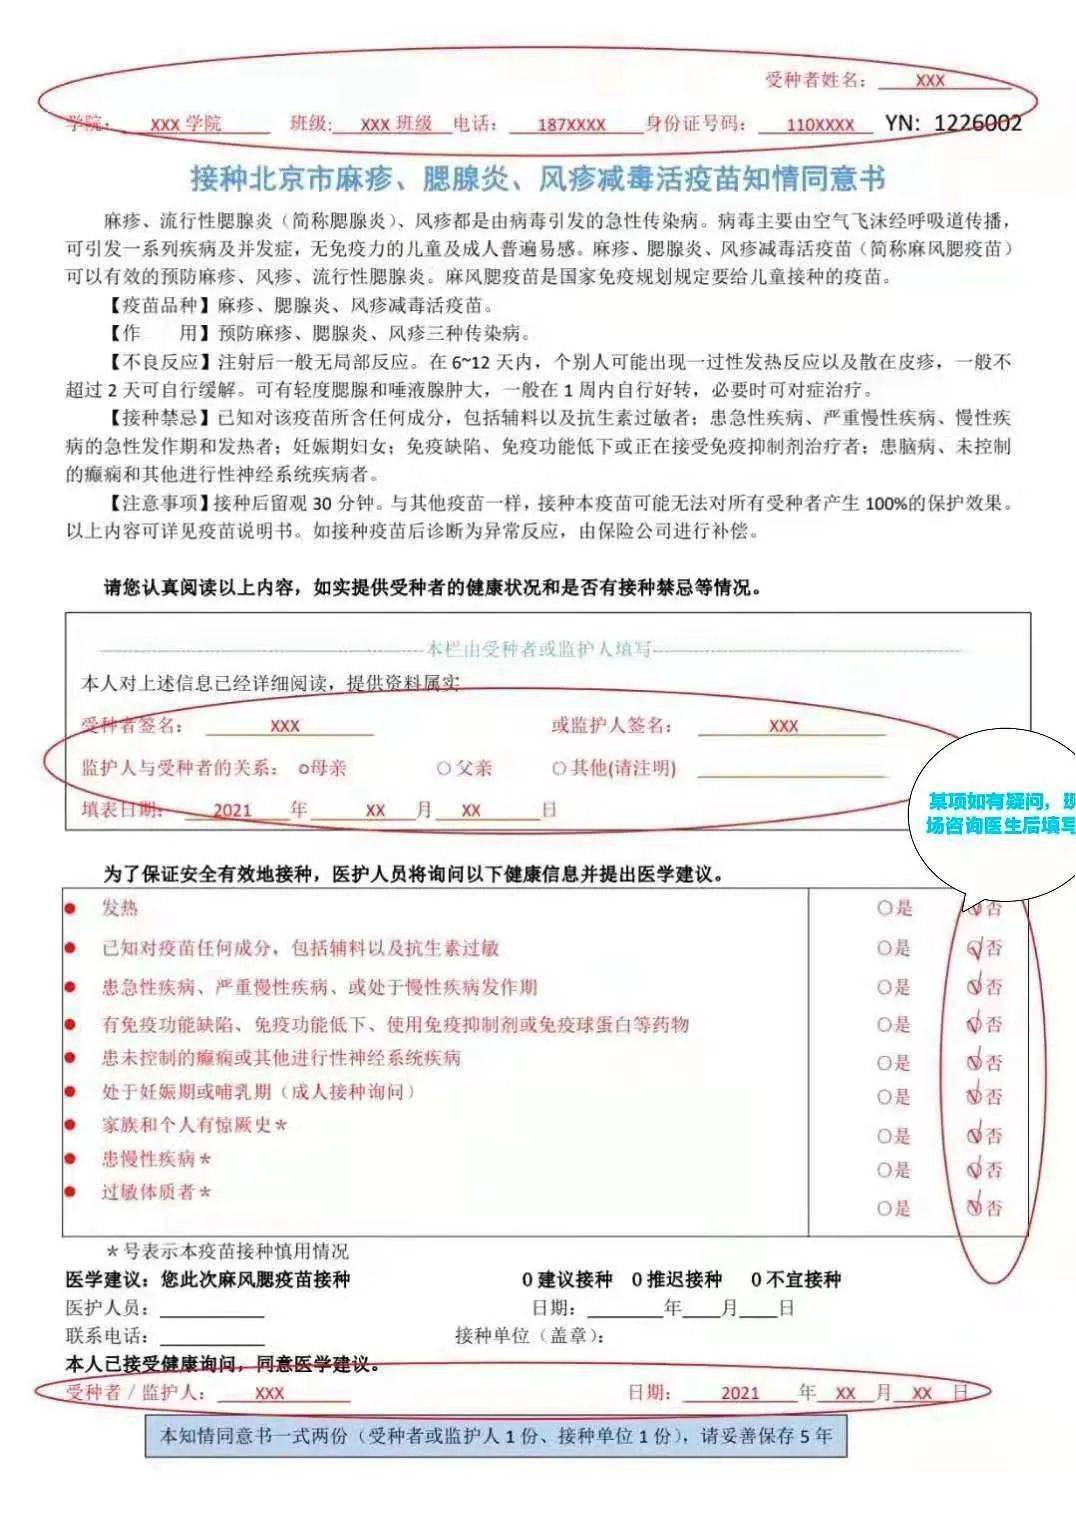 重要通知 北京林业大学2021级新生体检指南